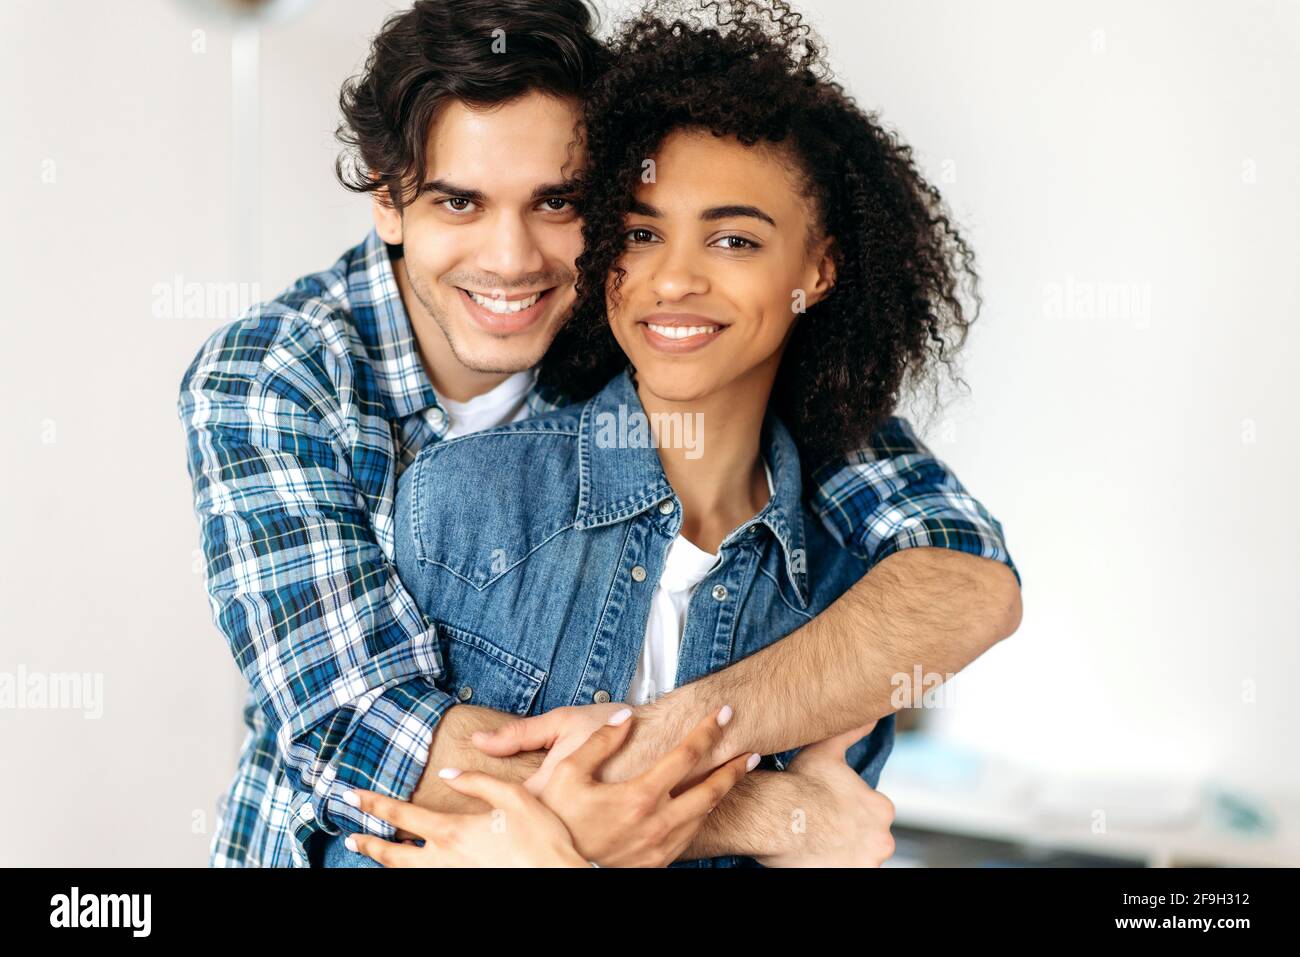 Portrait d'un jeune heureux couple multiracial amoureux. Jolie fille maurique afro-américaine et un type hispanique attrayant s'embrassant les uns les autres, regardant la caméra, souriant, heureux ensemble Banque D'Images